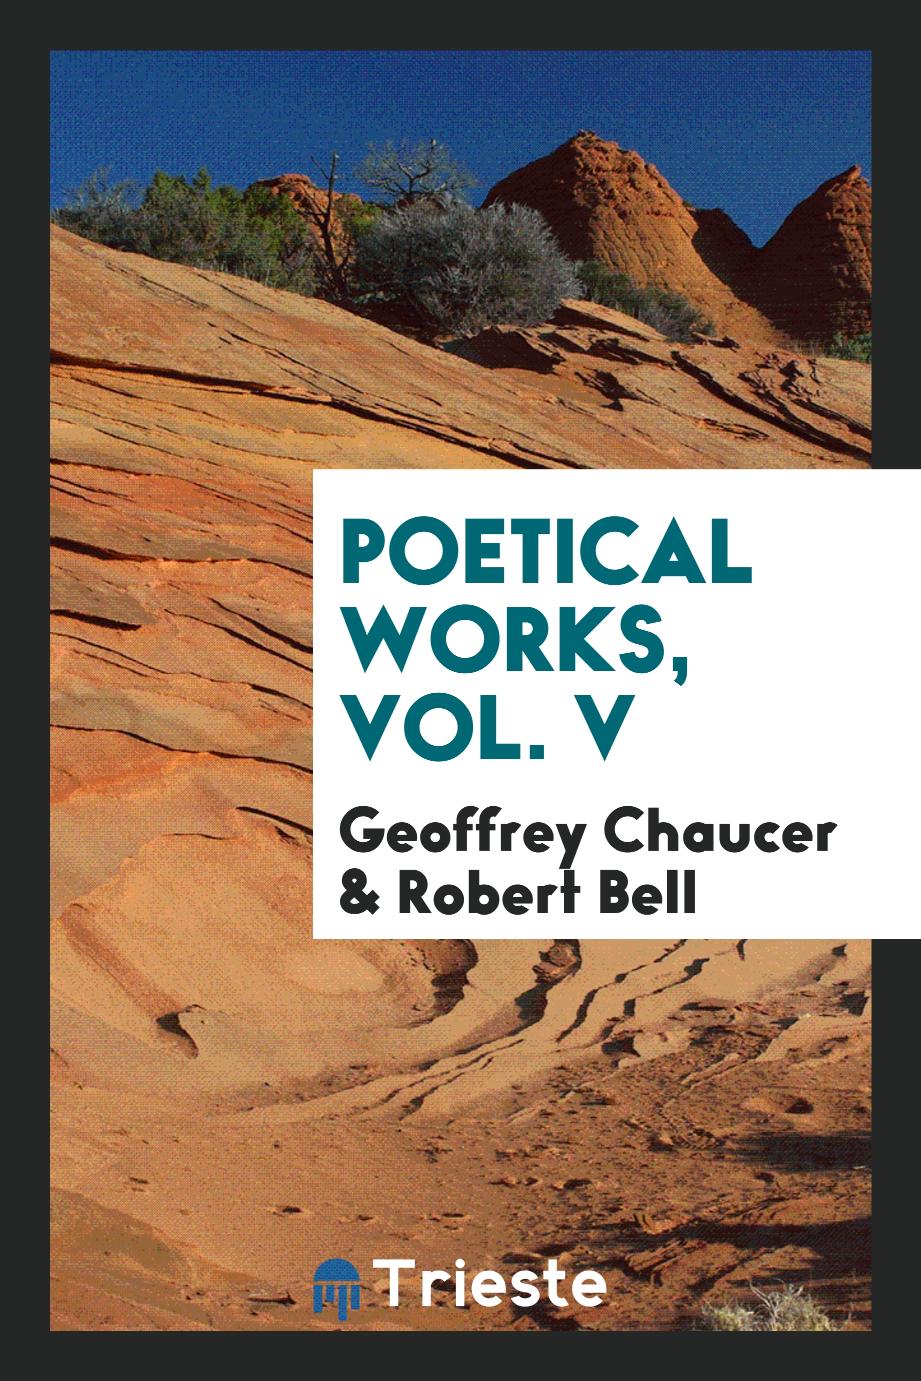 Poetical works, Vol. V